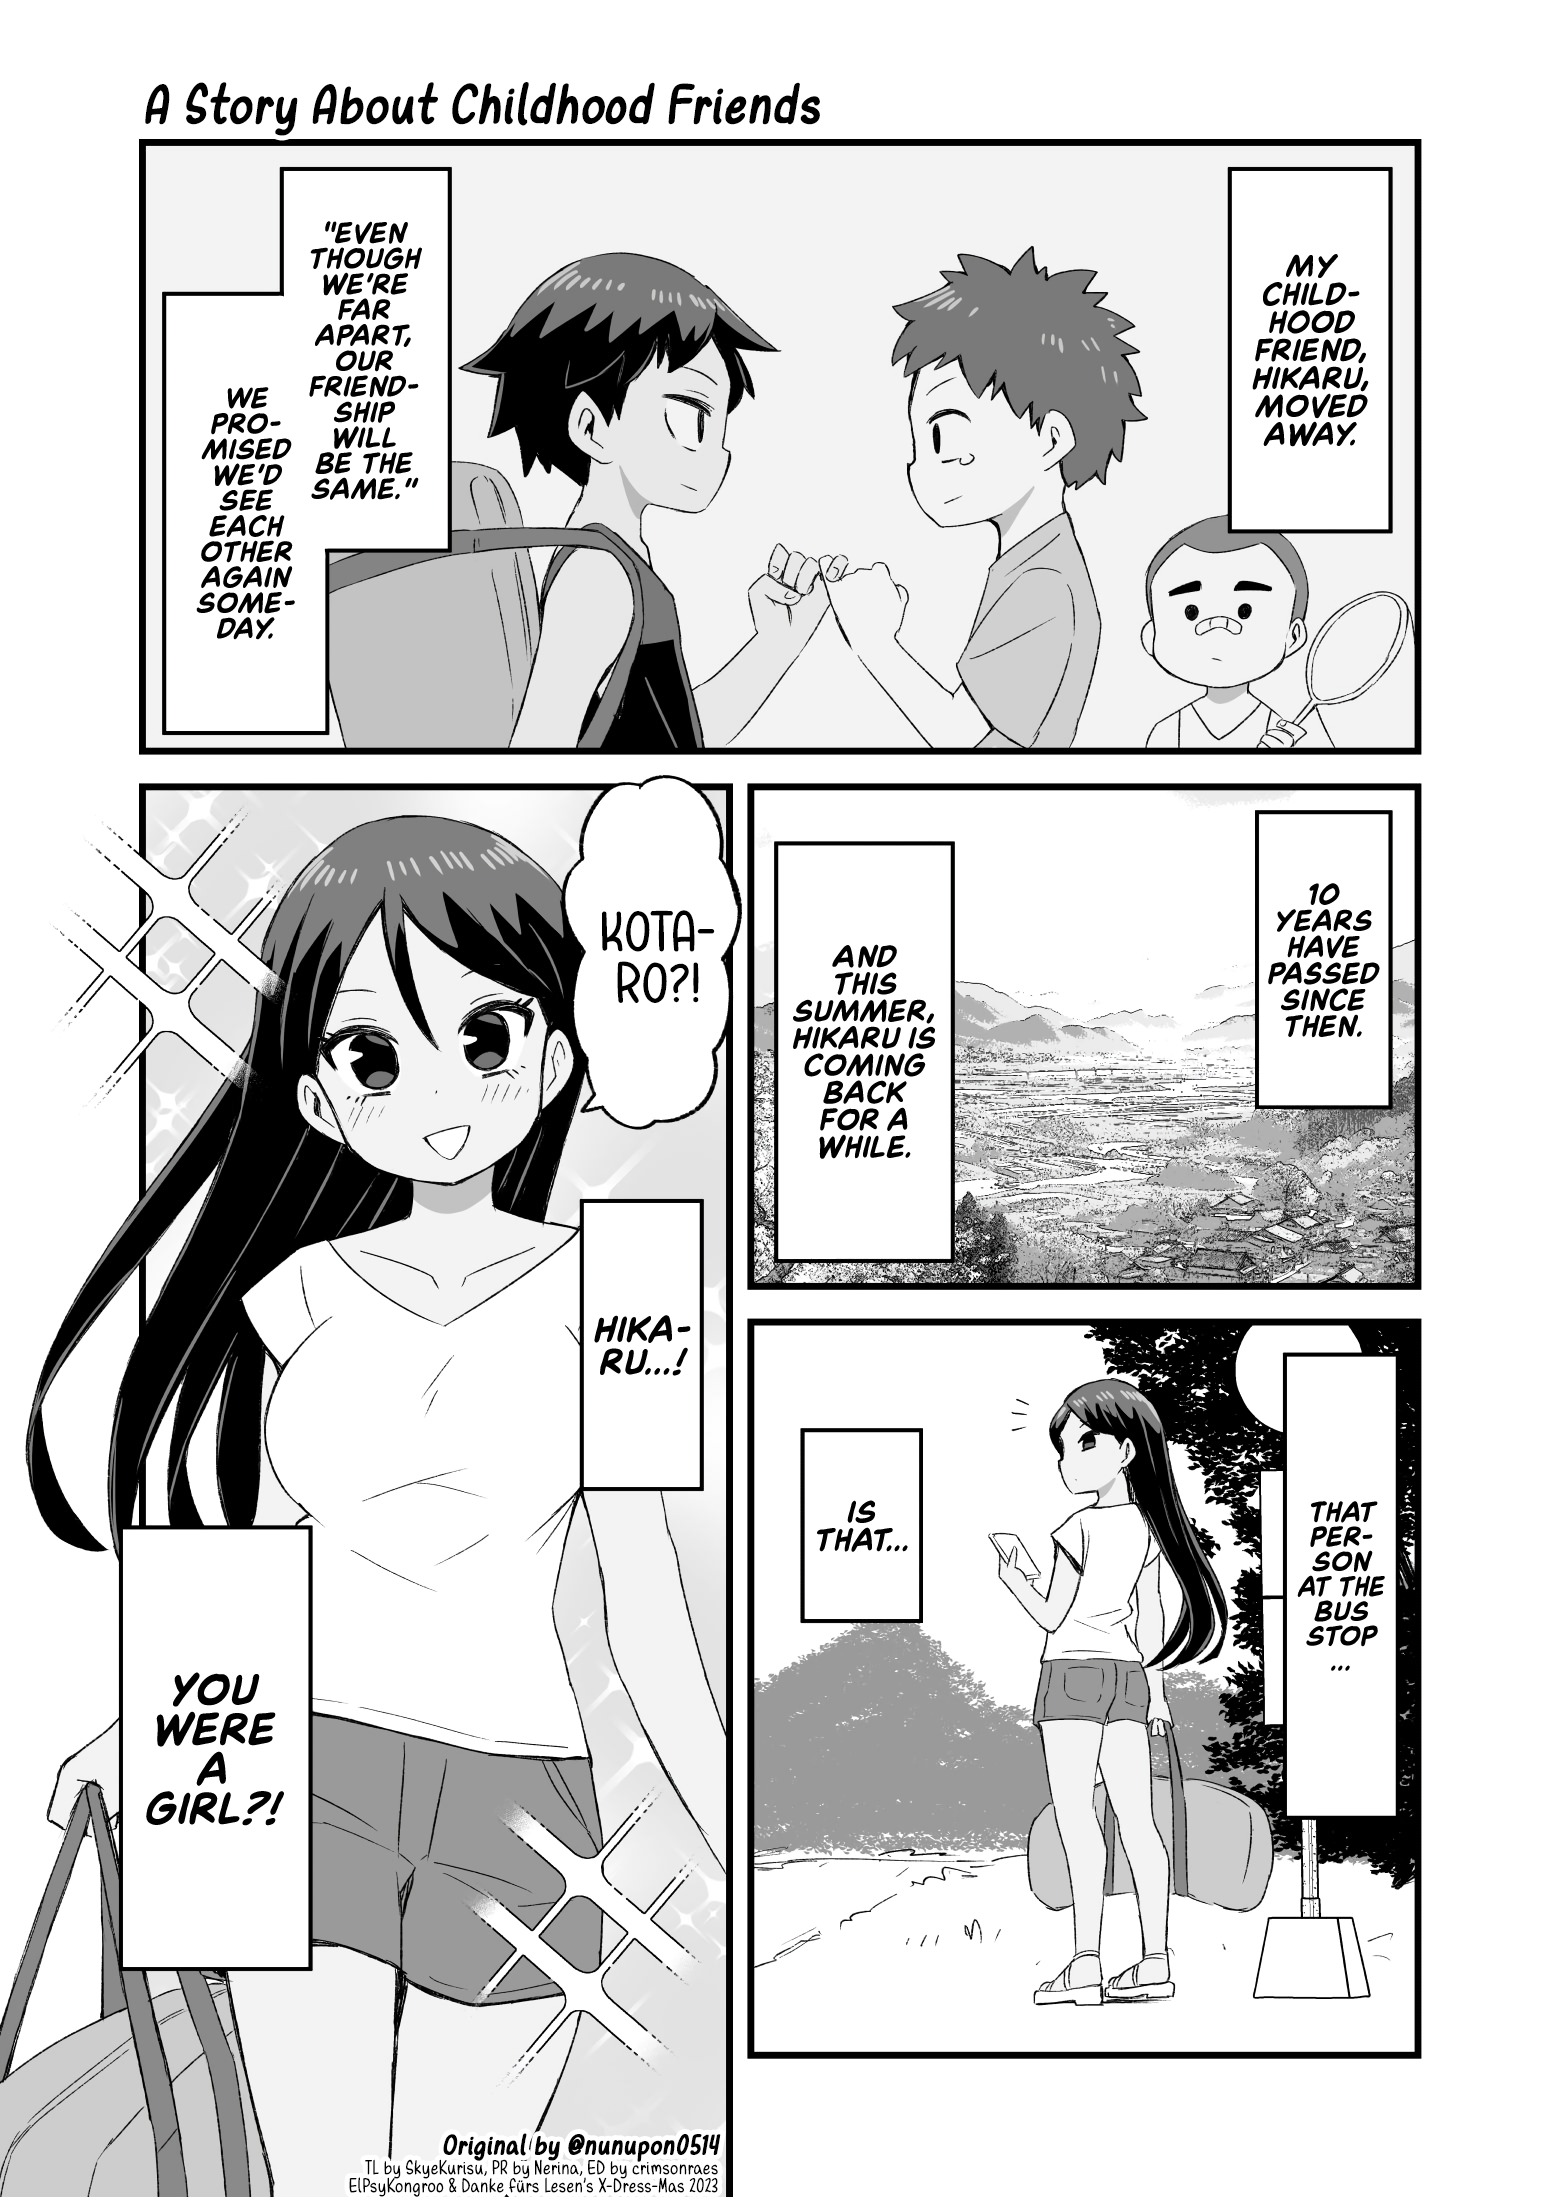 A Story About Childhood Friends manga